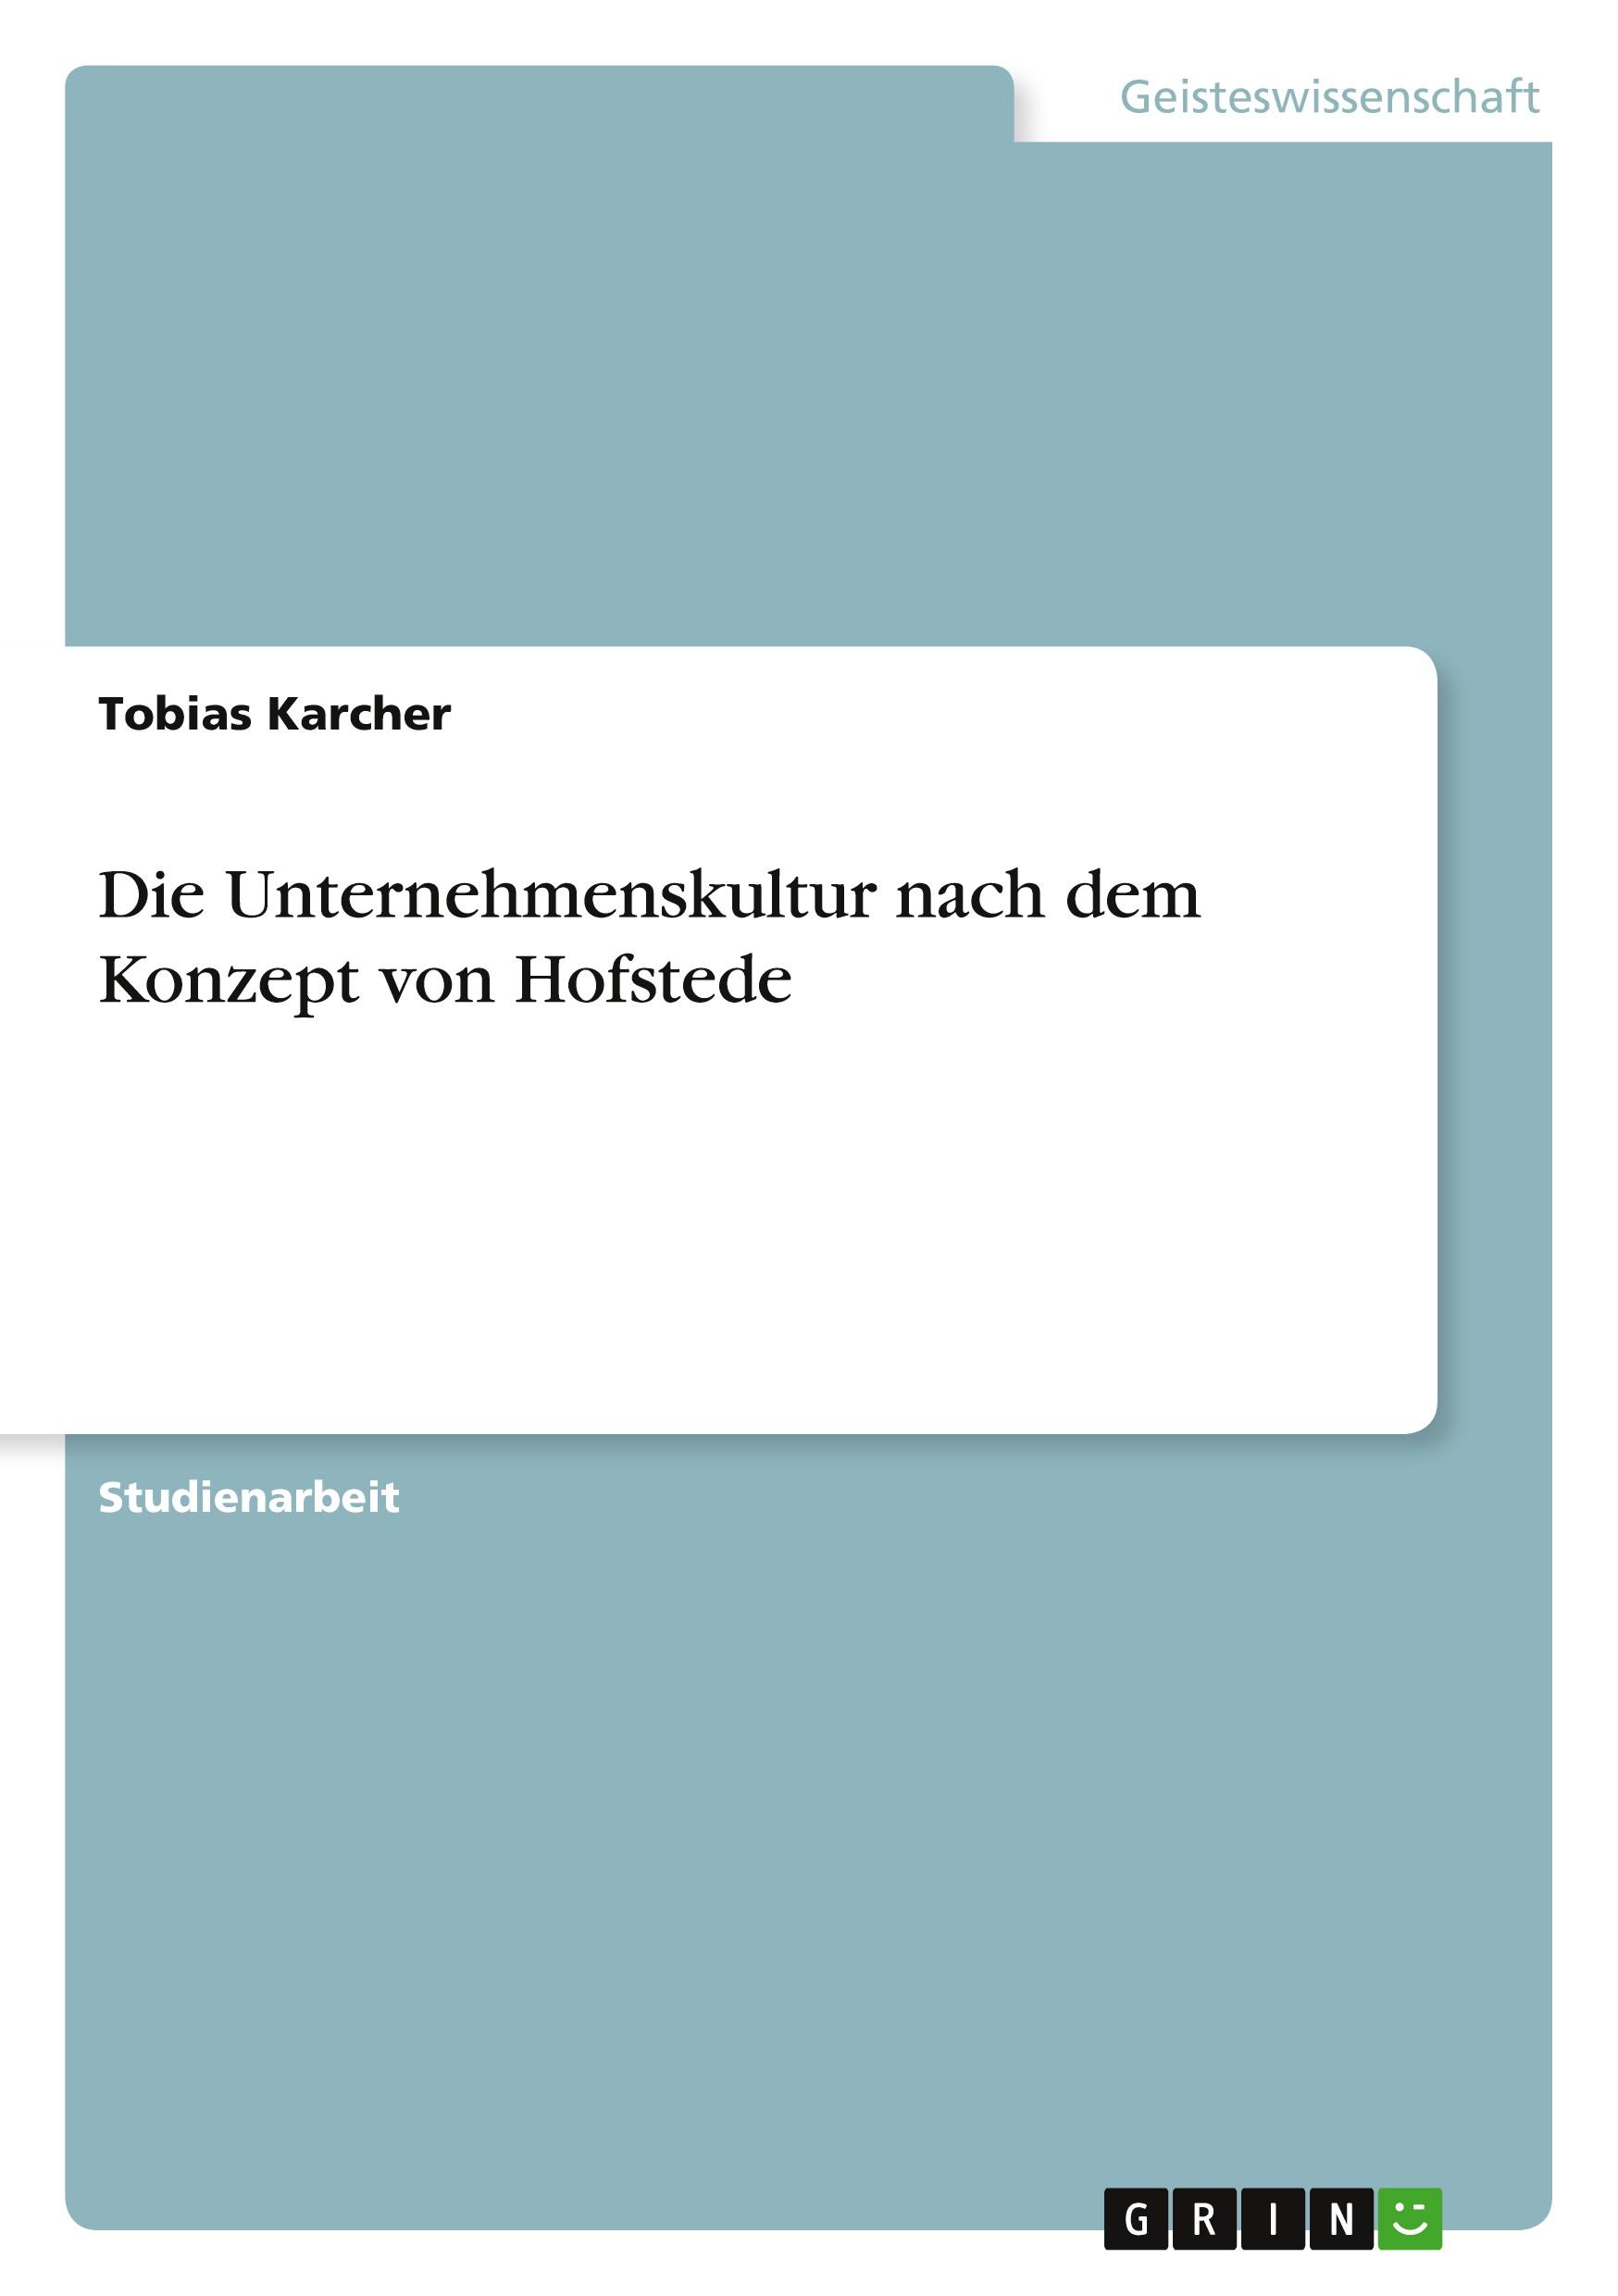 Die Unternehmenskultur nach dem Konzept von Hofstede / Tobias Karcher / Taschenbuch / Paperback / 28 S. / Deutsch / 2010 / GRIN Verlag / EAN 9783640716739 - Karcher, Tobias